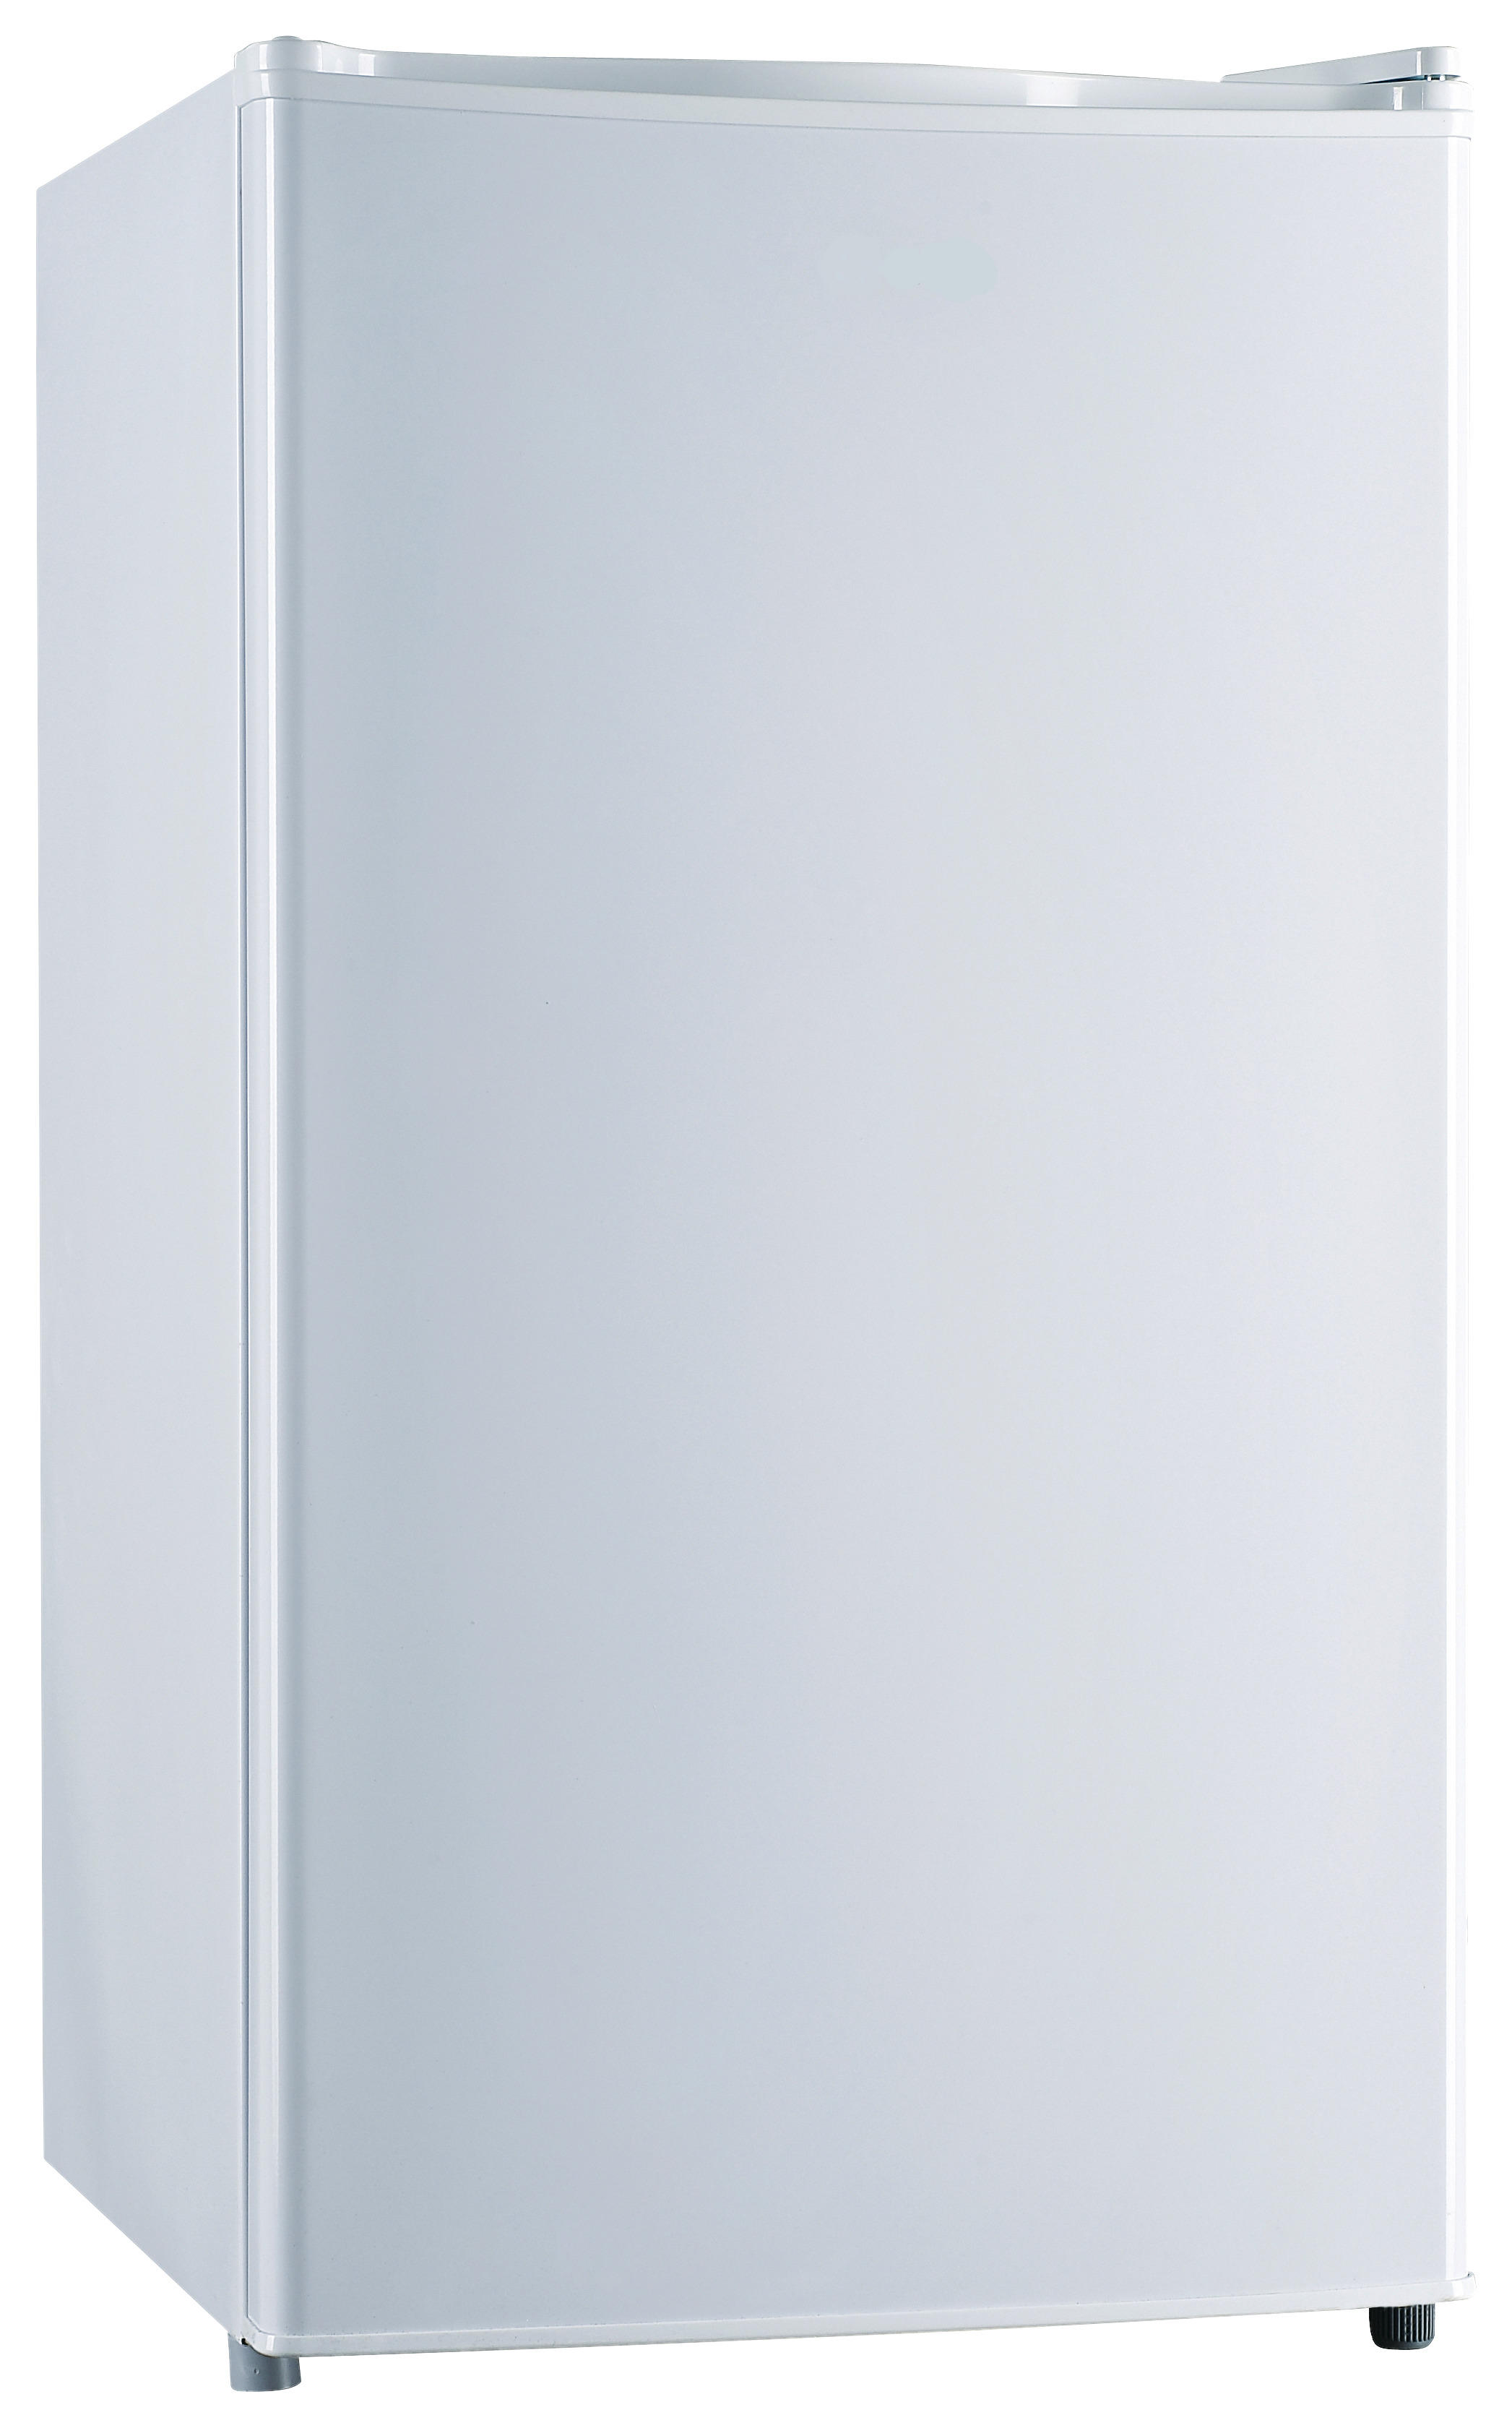 Pocoline Stand-kühlschrank Ks-81r Weiß B/h/t: Ca. 45x84x44 Cm Stand-Kühlschrank Ks-81r - weiß (45,00/84,00/44,00cm)